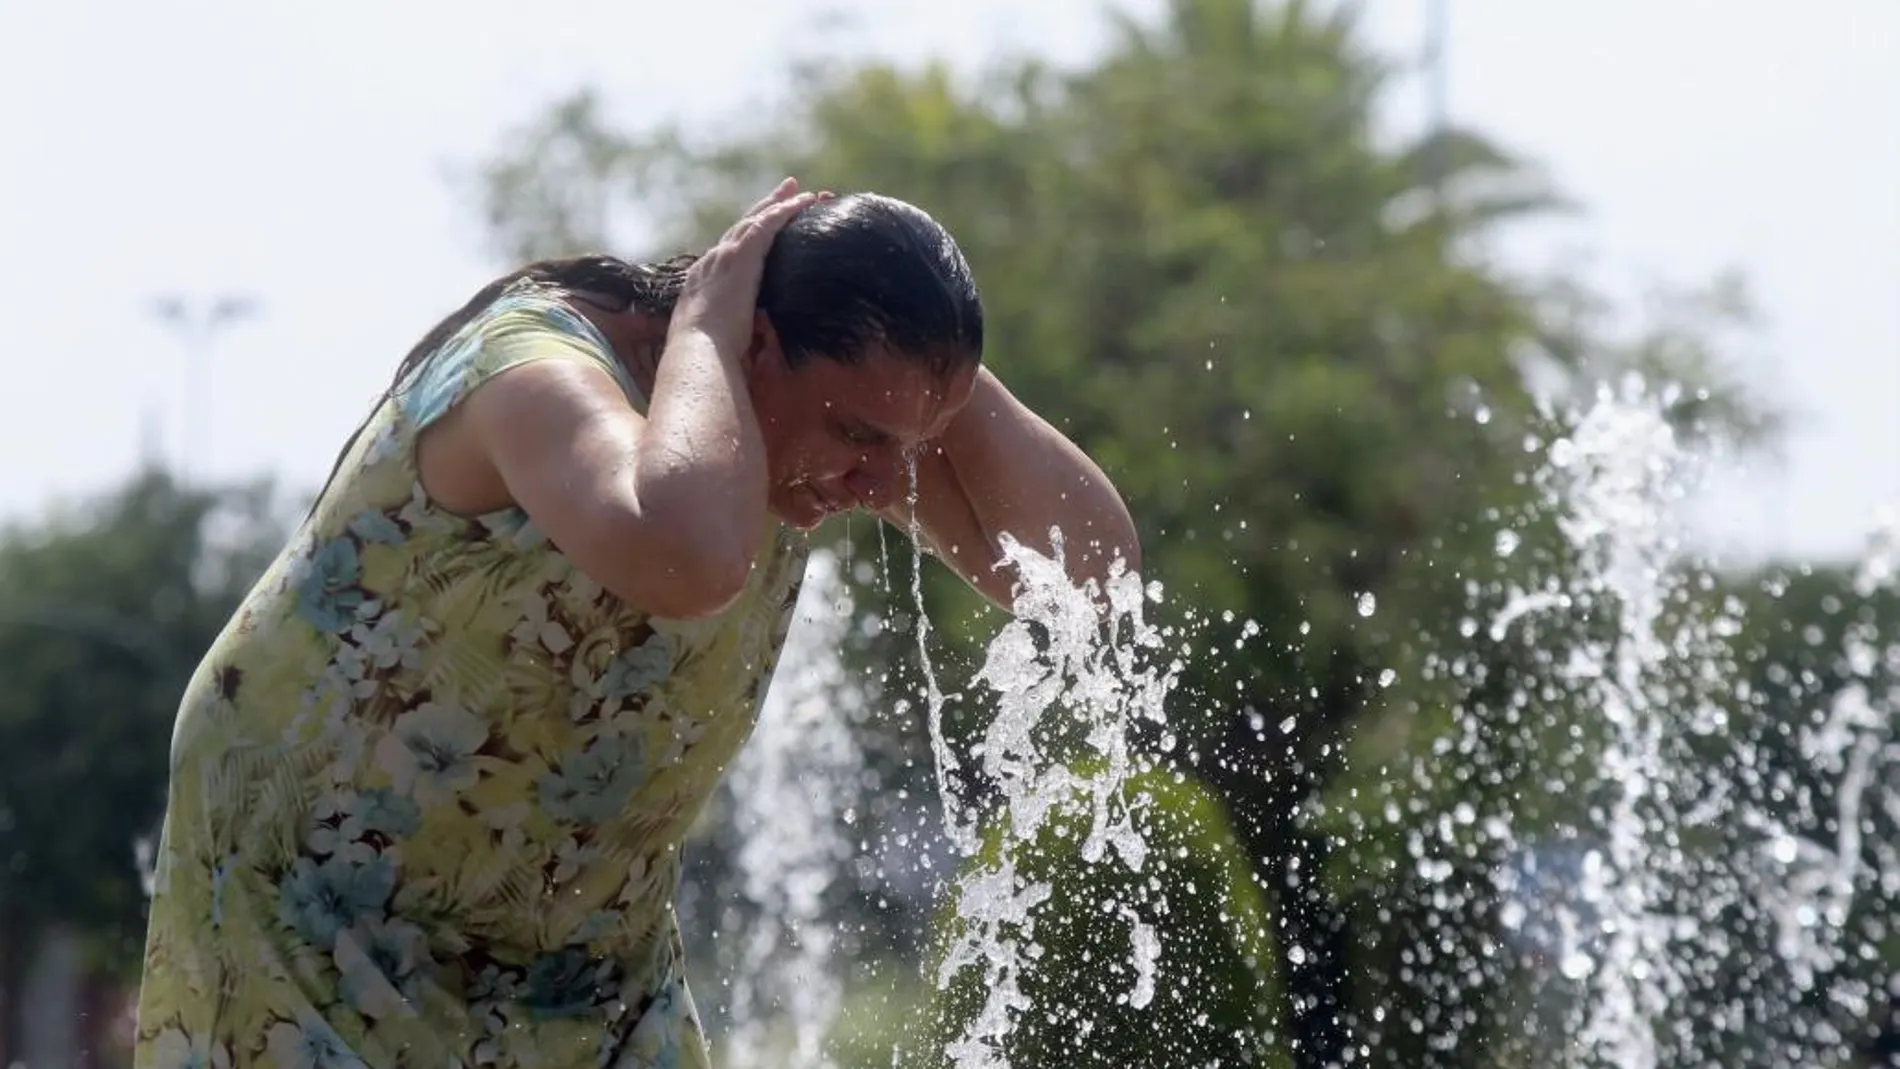 Una mujer se refresca en una de las fuentes de la ciudad debido a las altas temperaturas que se registran en Córdoba